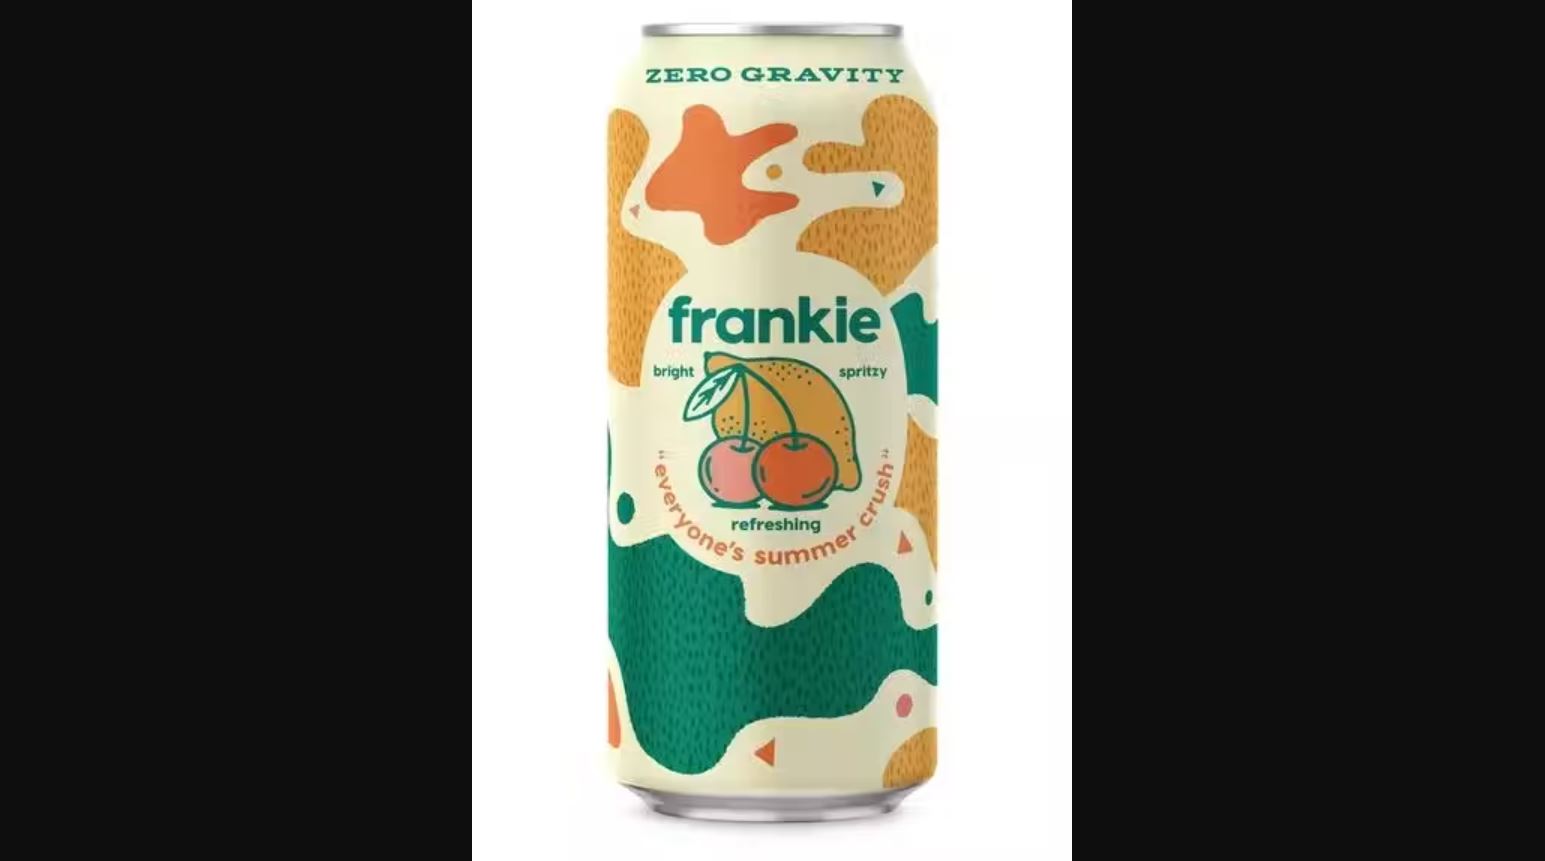 Zero Gravity Frankie